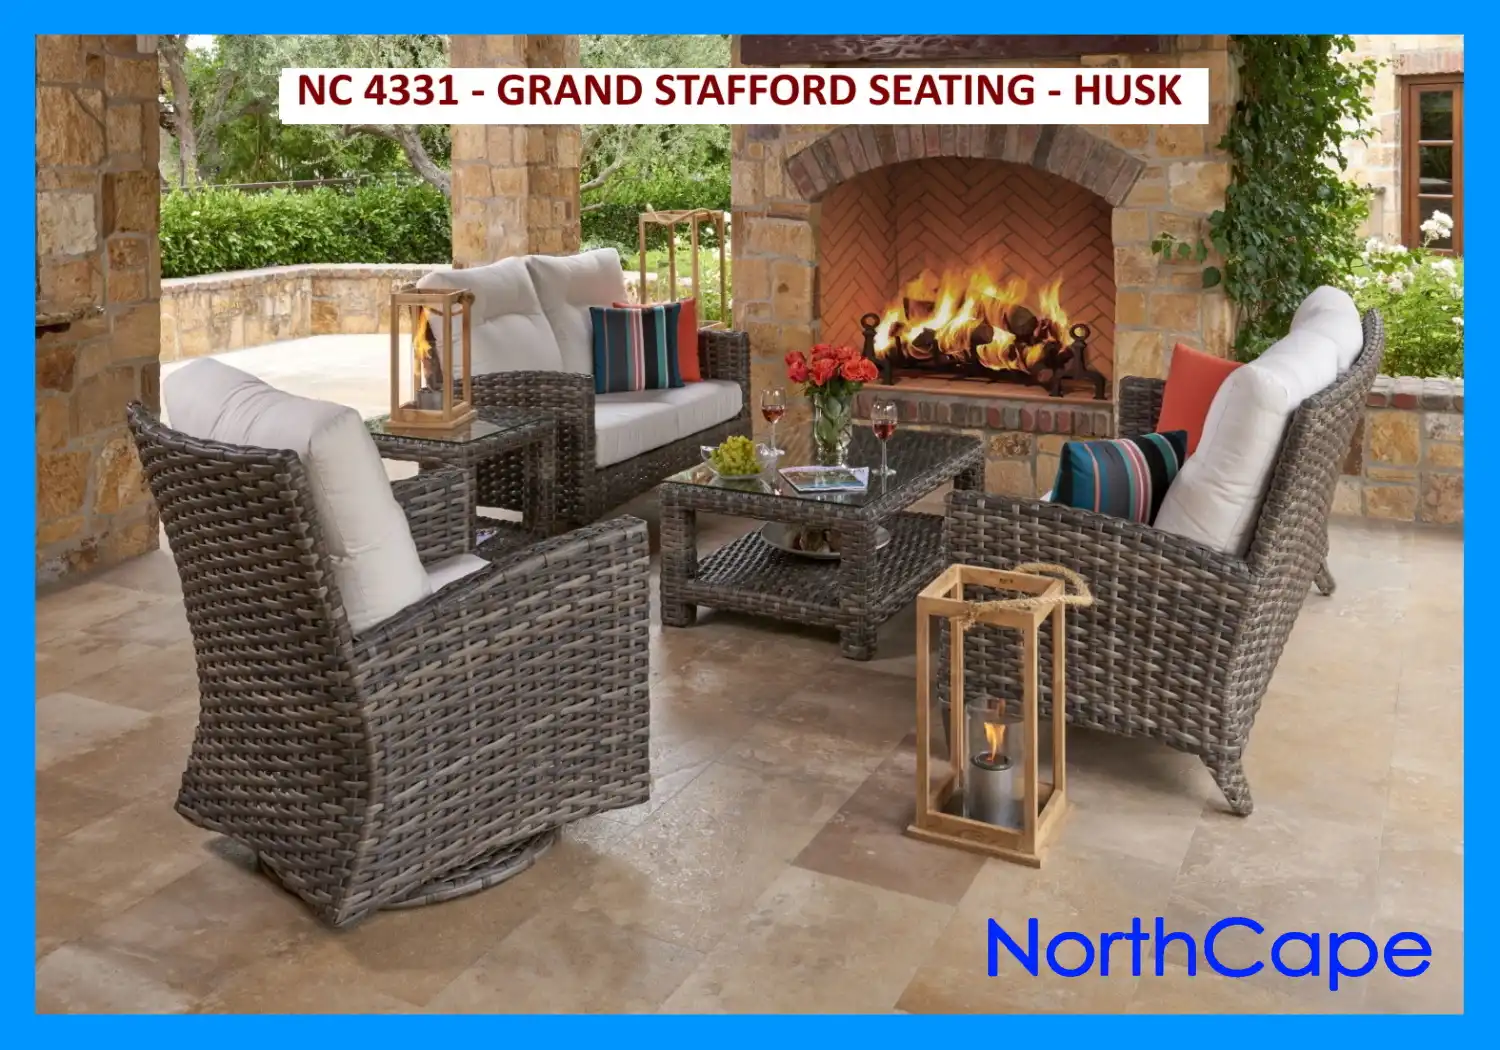 NC4331 - GRAND STAFFORD SEATING - HUSK